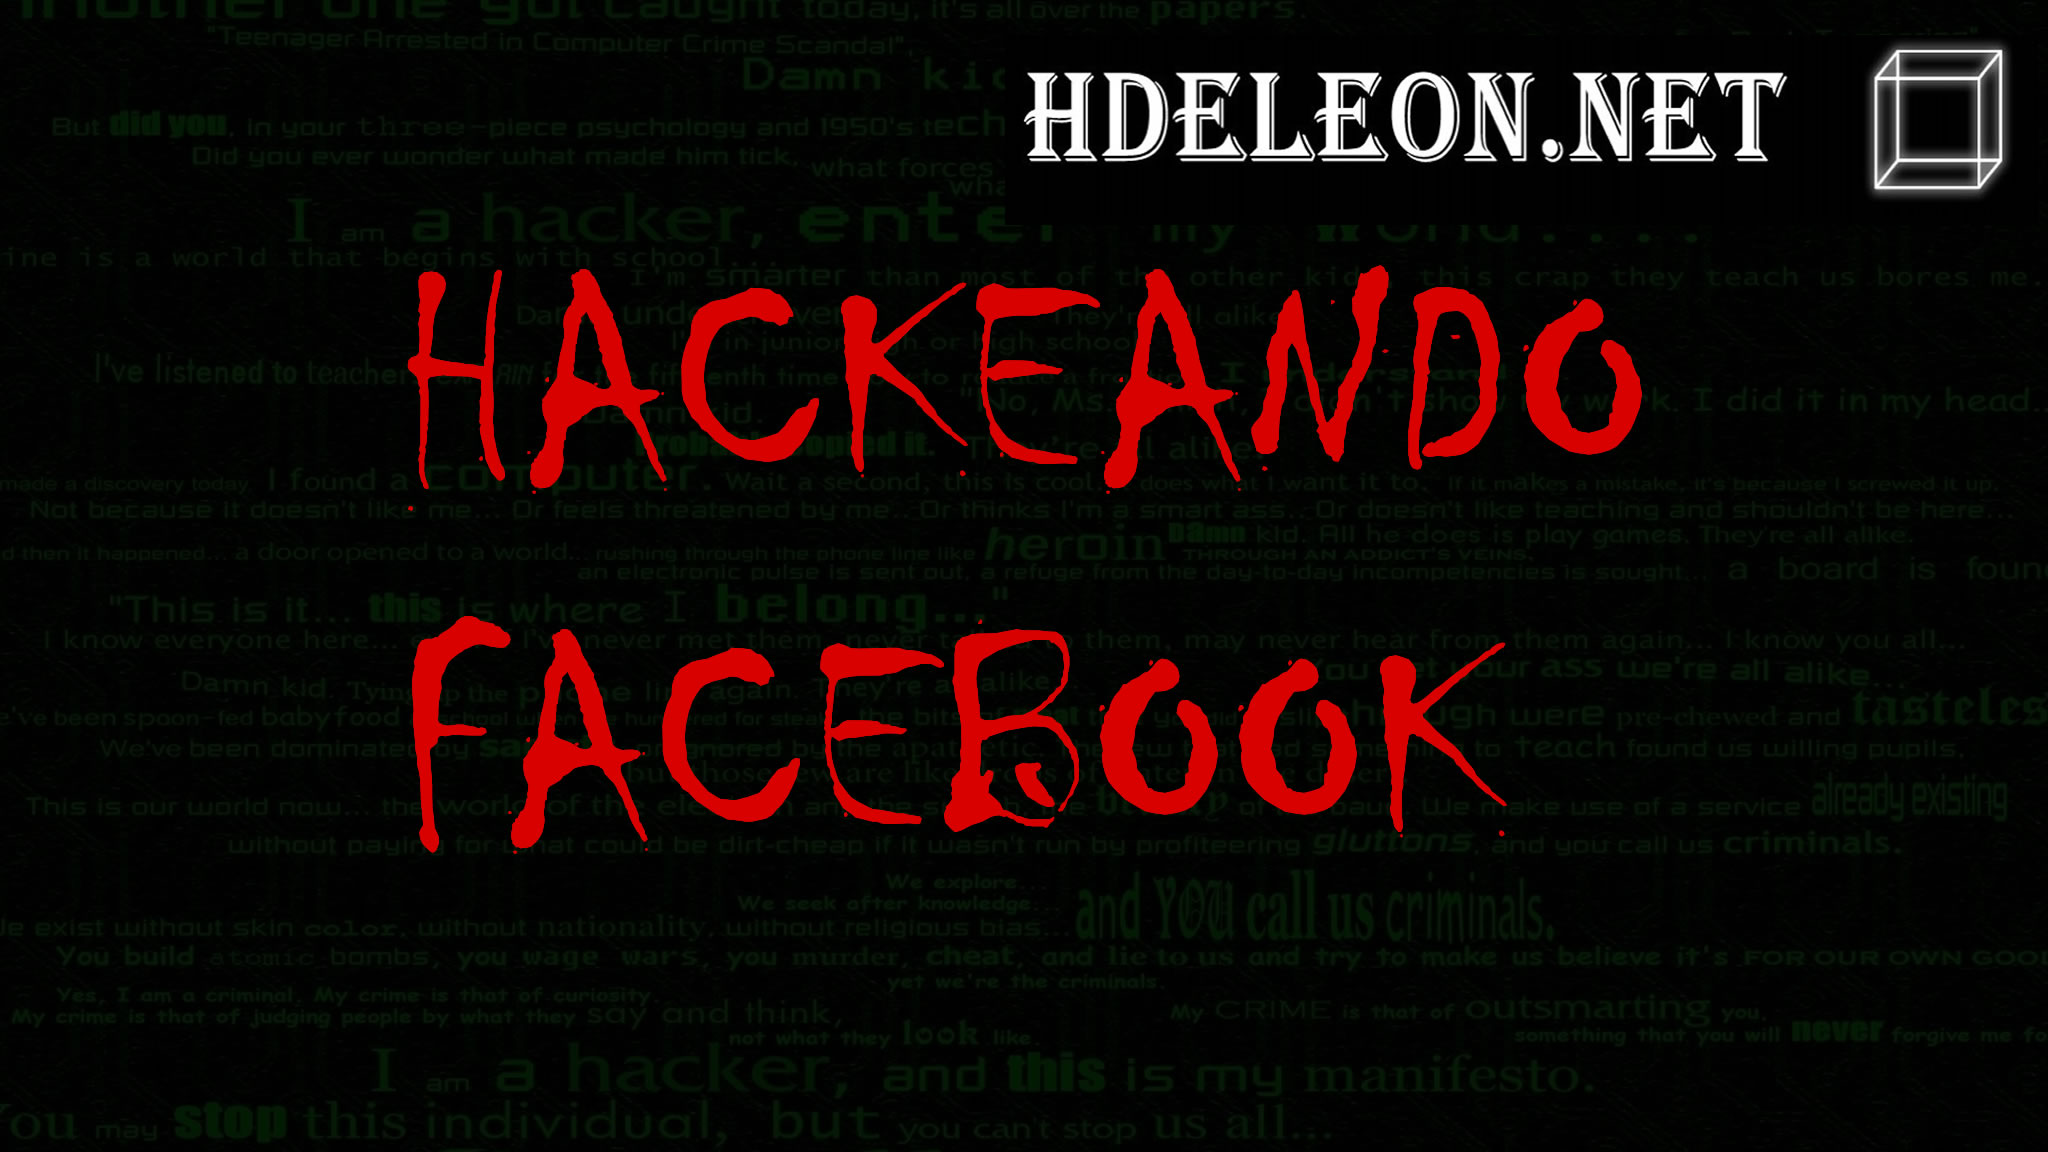 ¿Cómo hackear Facebook?, te mostrare que es posible gracias al hackeo masivo del 28 de septiembre.